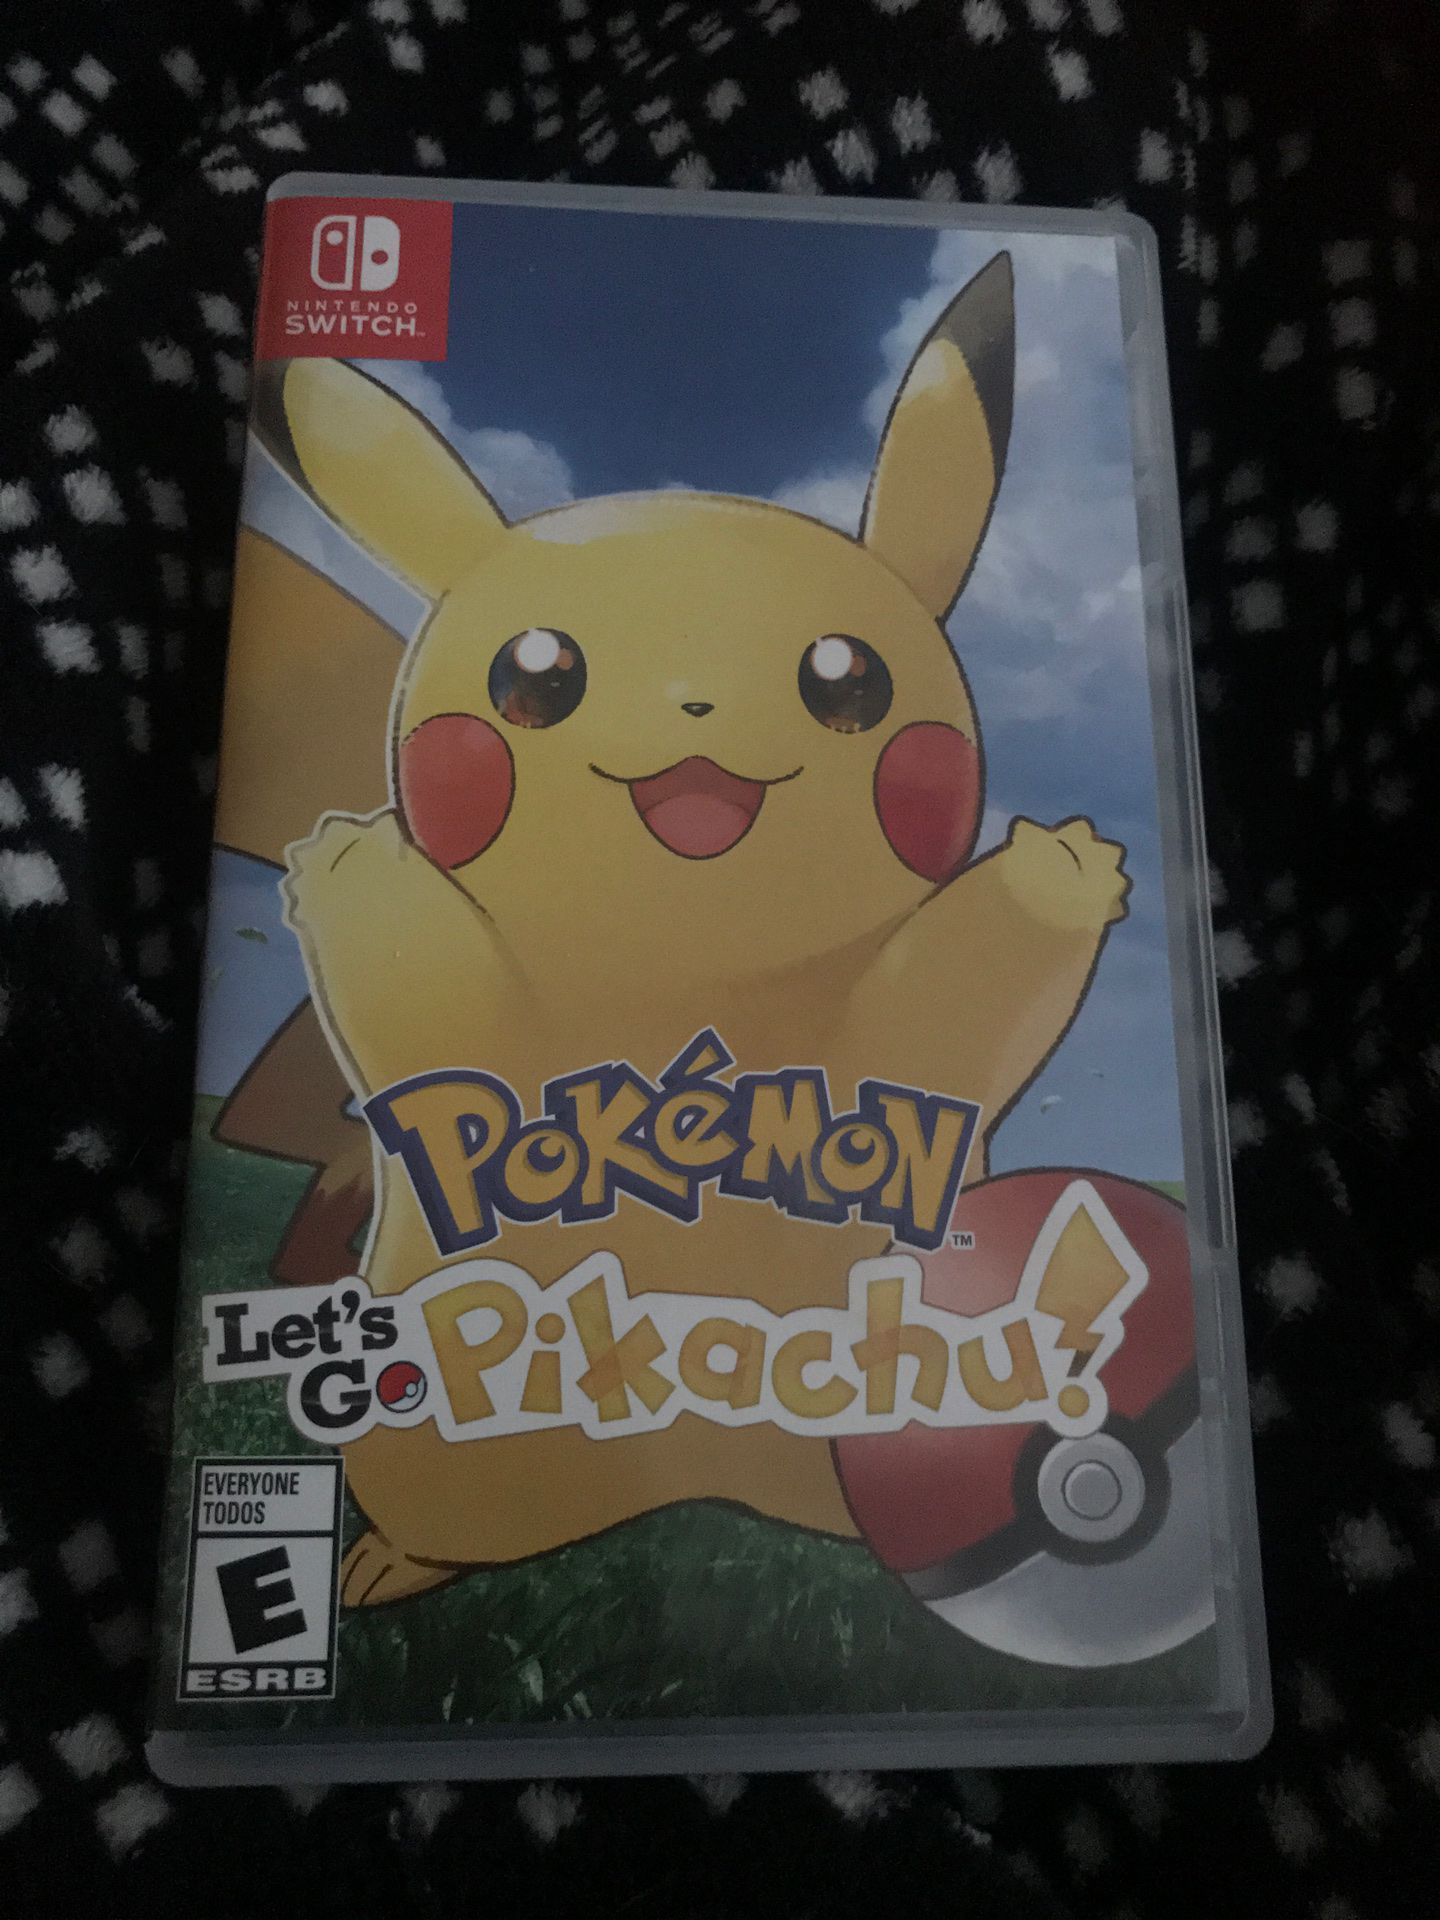 Pokémon let’s go Pikachu Nintendo Switch game